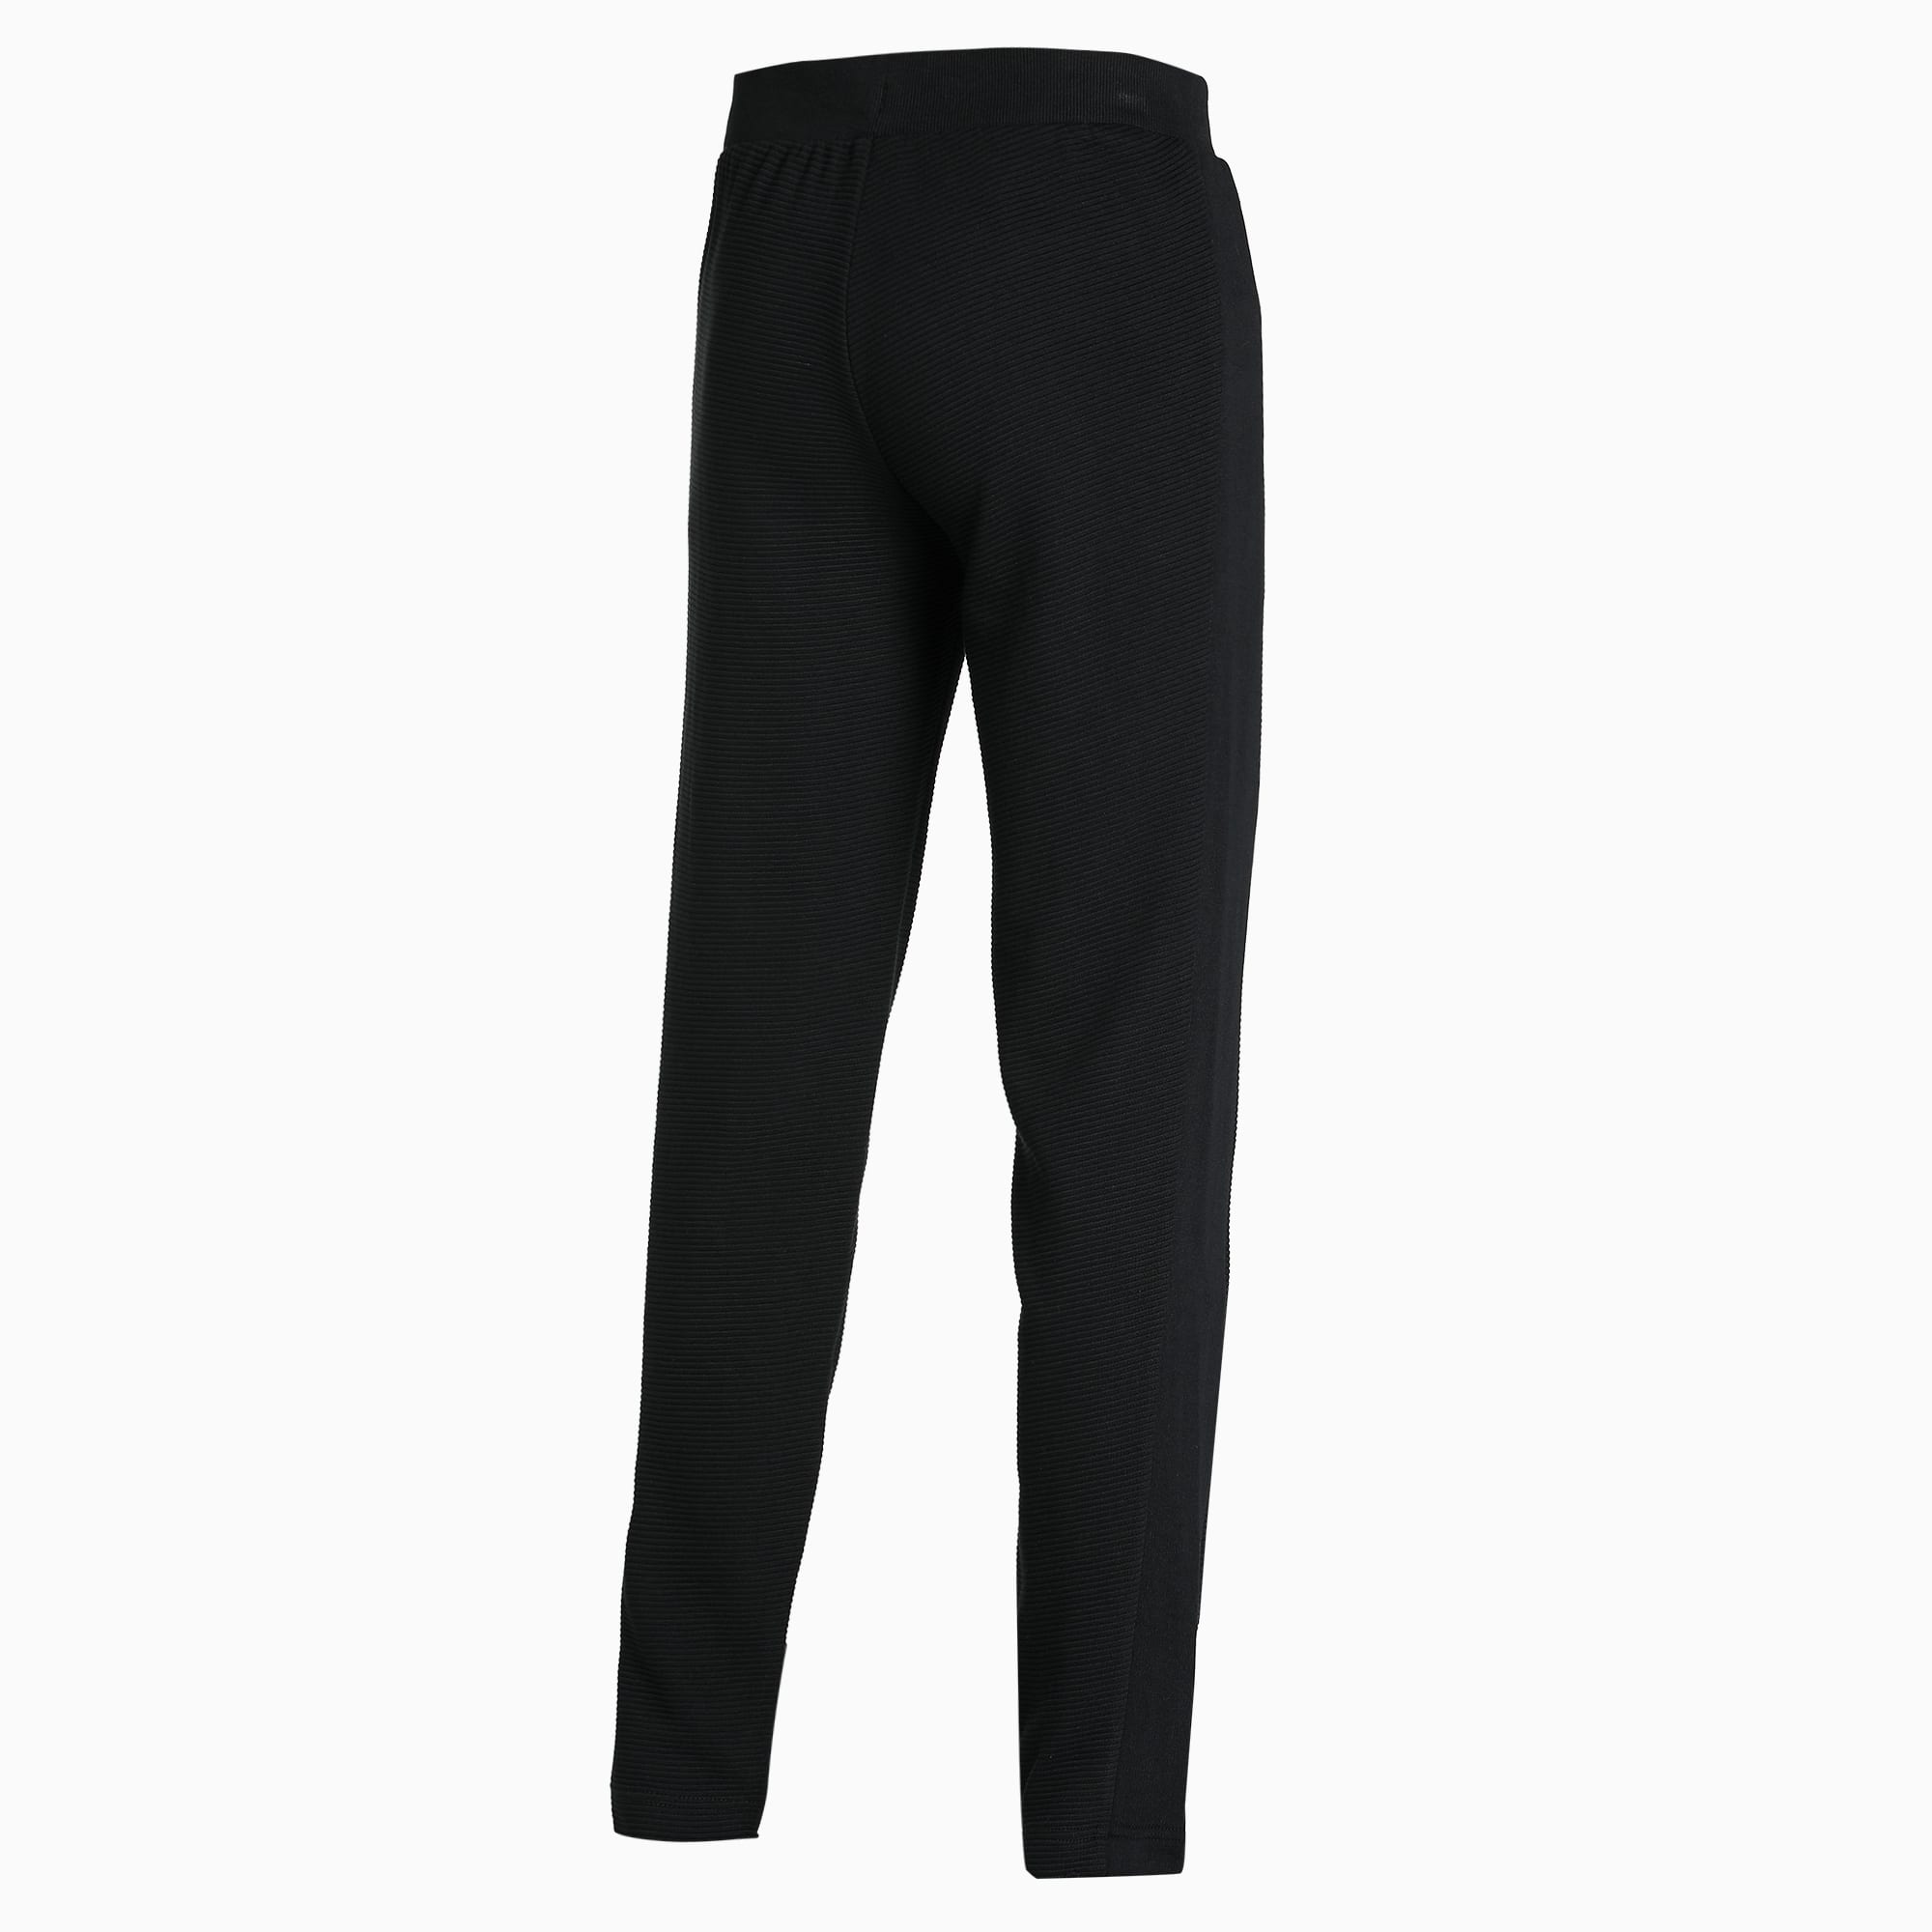 Men's PUMA Ottoman Slim Fit Sweat Pants in Black size XL, PUMA, Fort